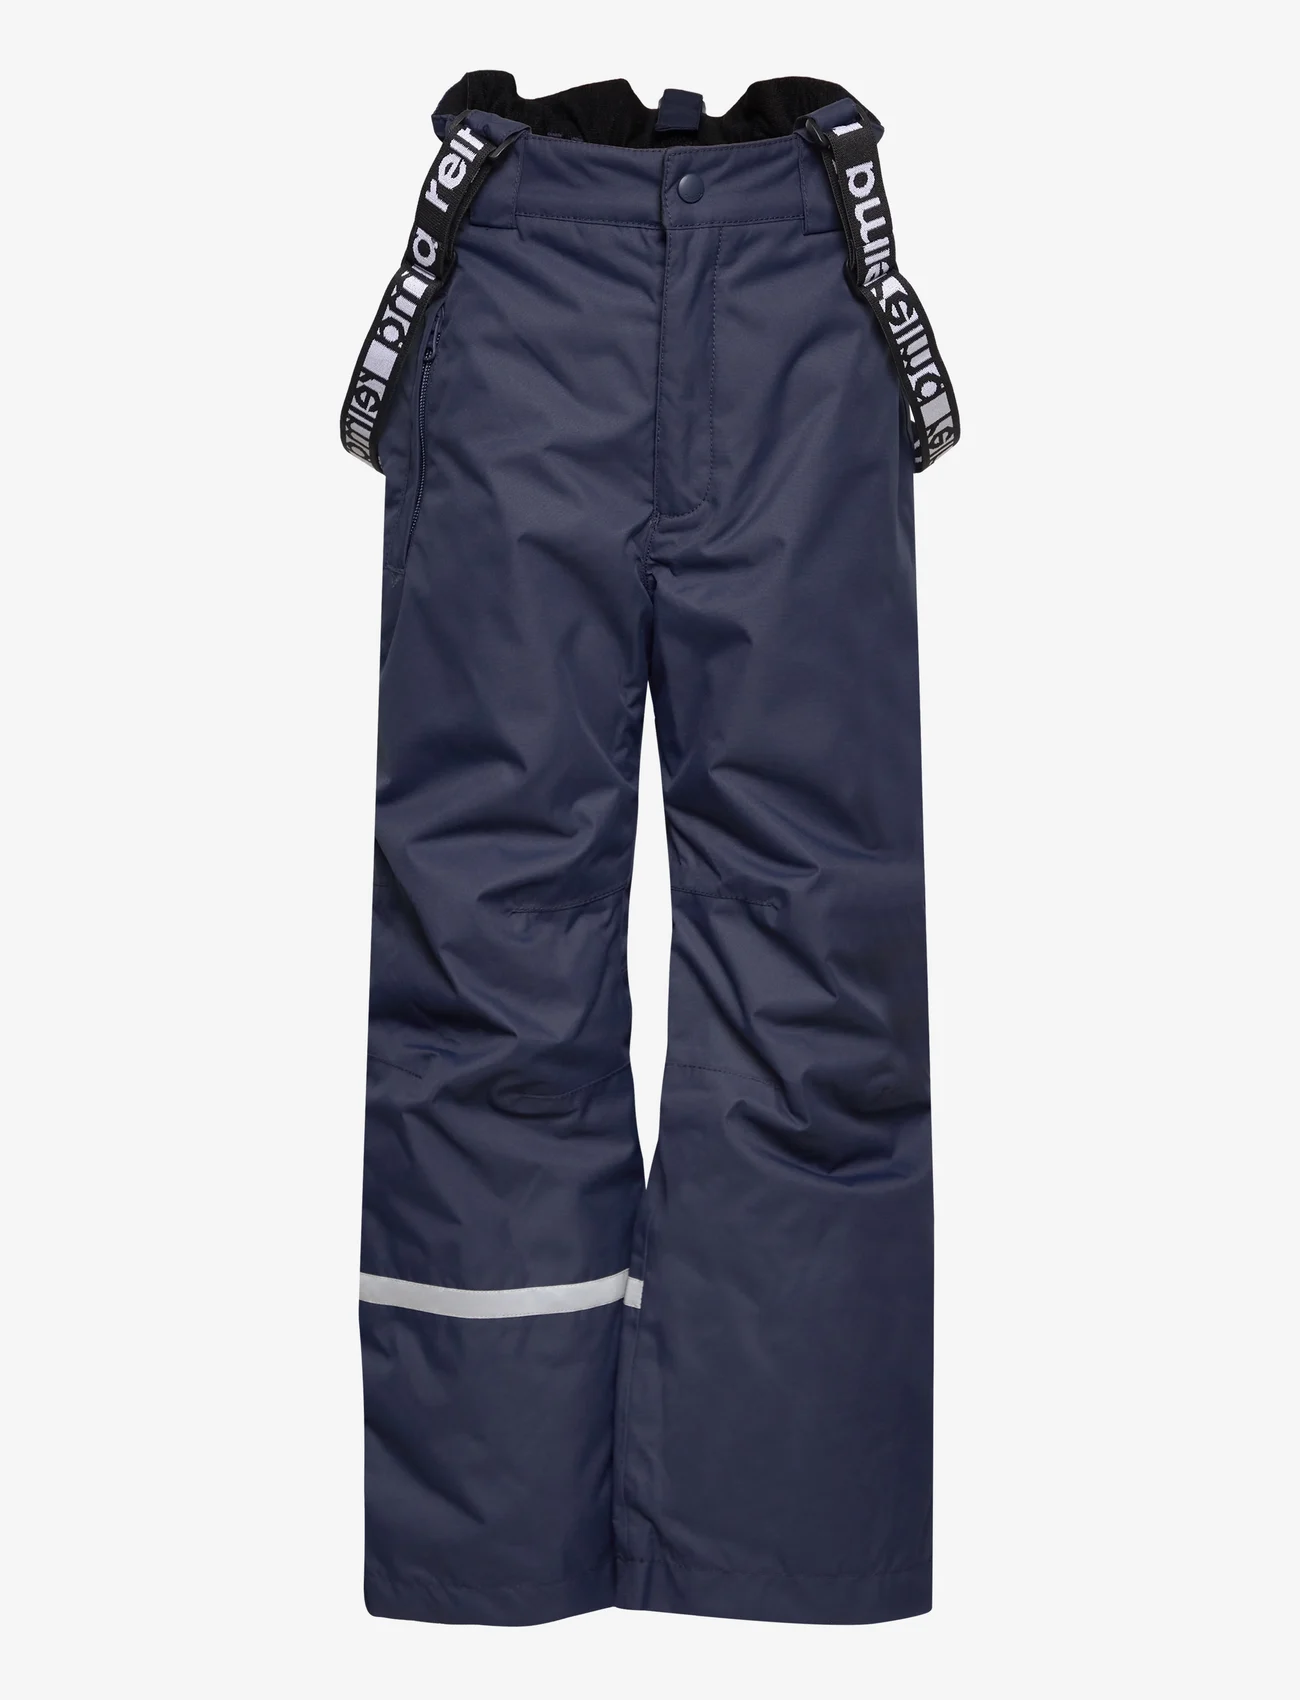 Reima - Winter pants, Tuokio - outdoorhosen - navy - 0